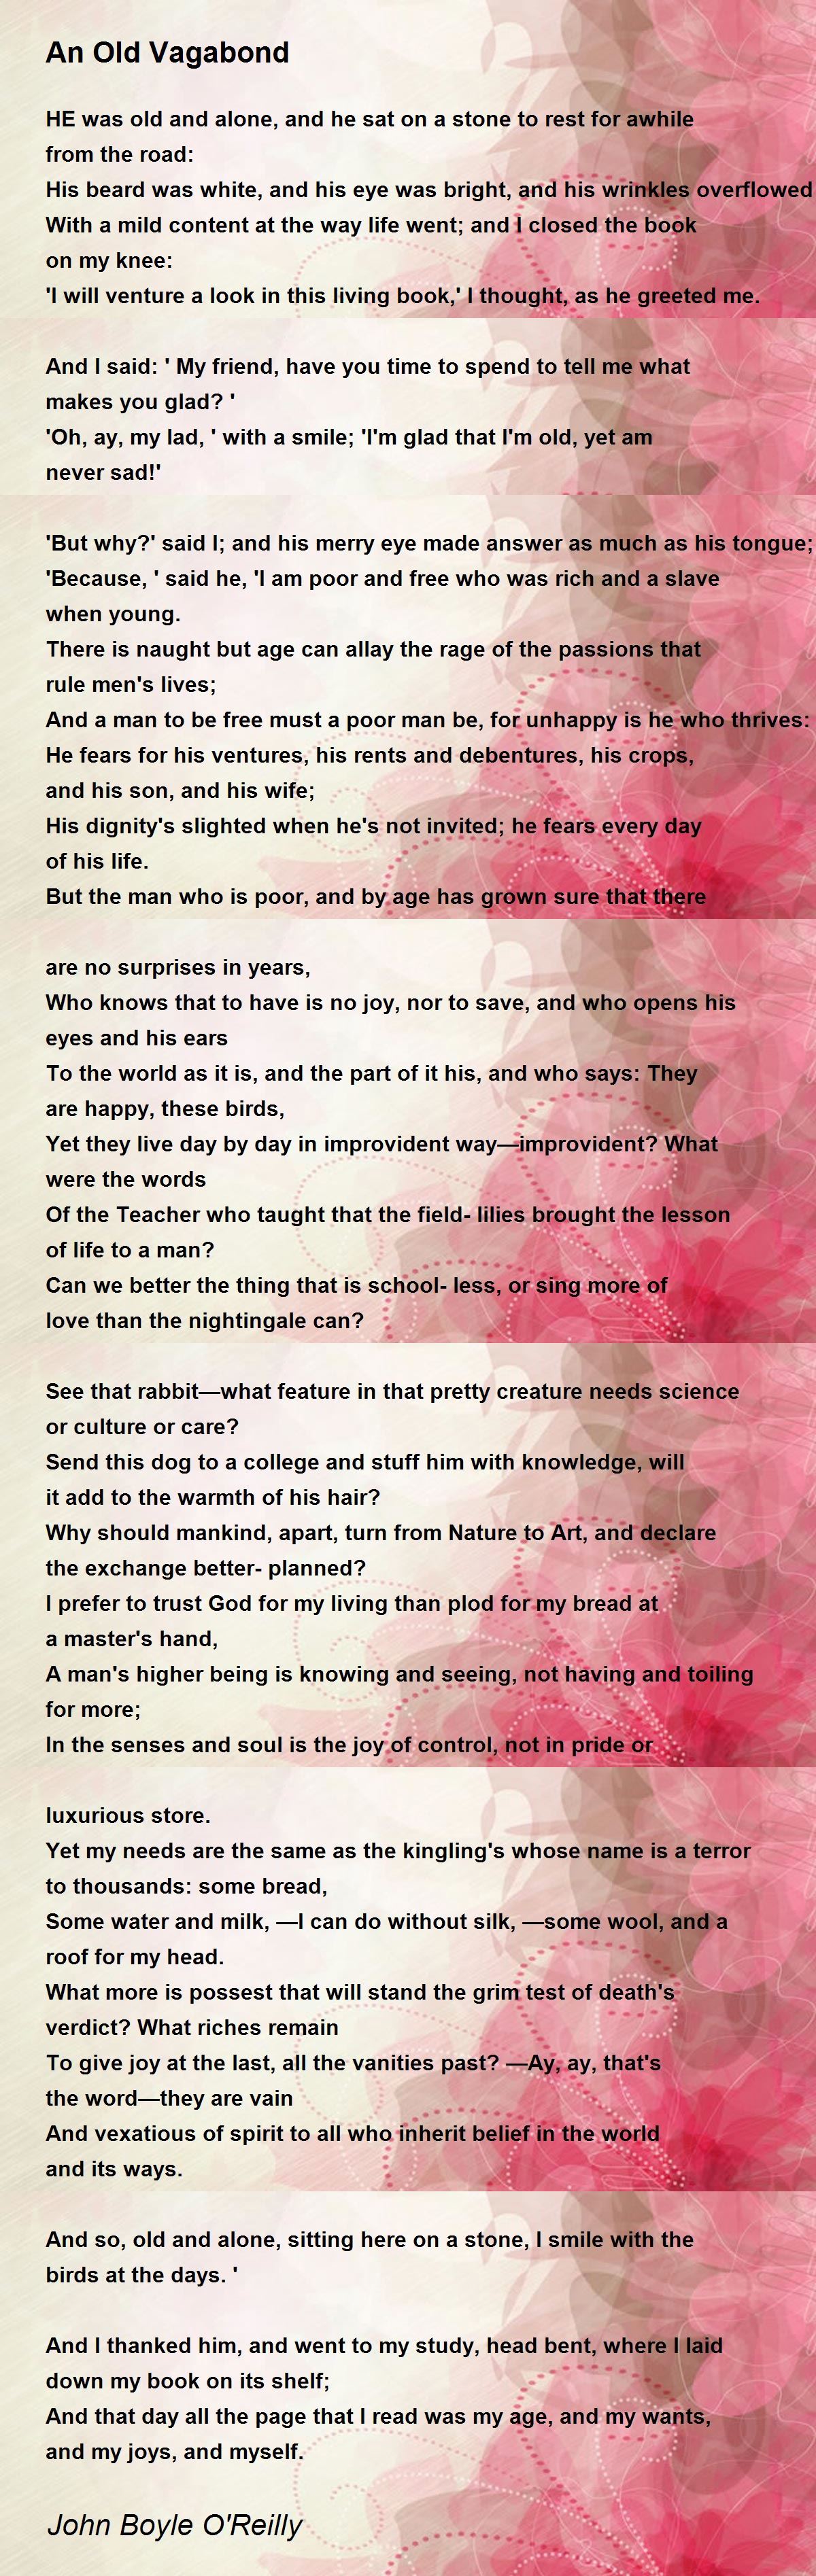 An Old Vagabond - An Old Vagabond Poem by John Boyle O'Reilly